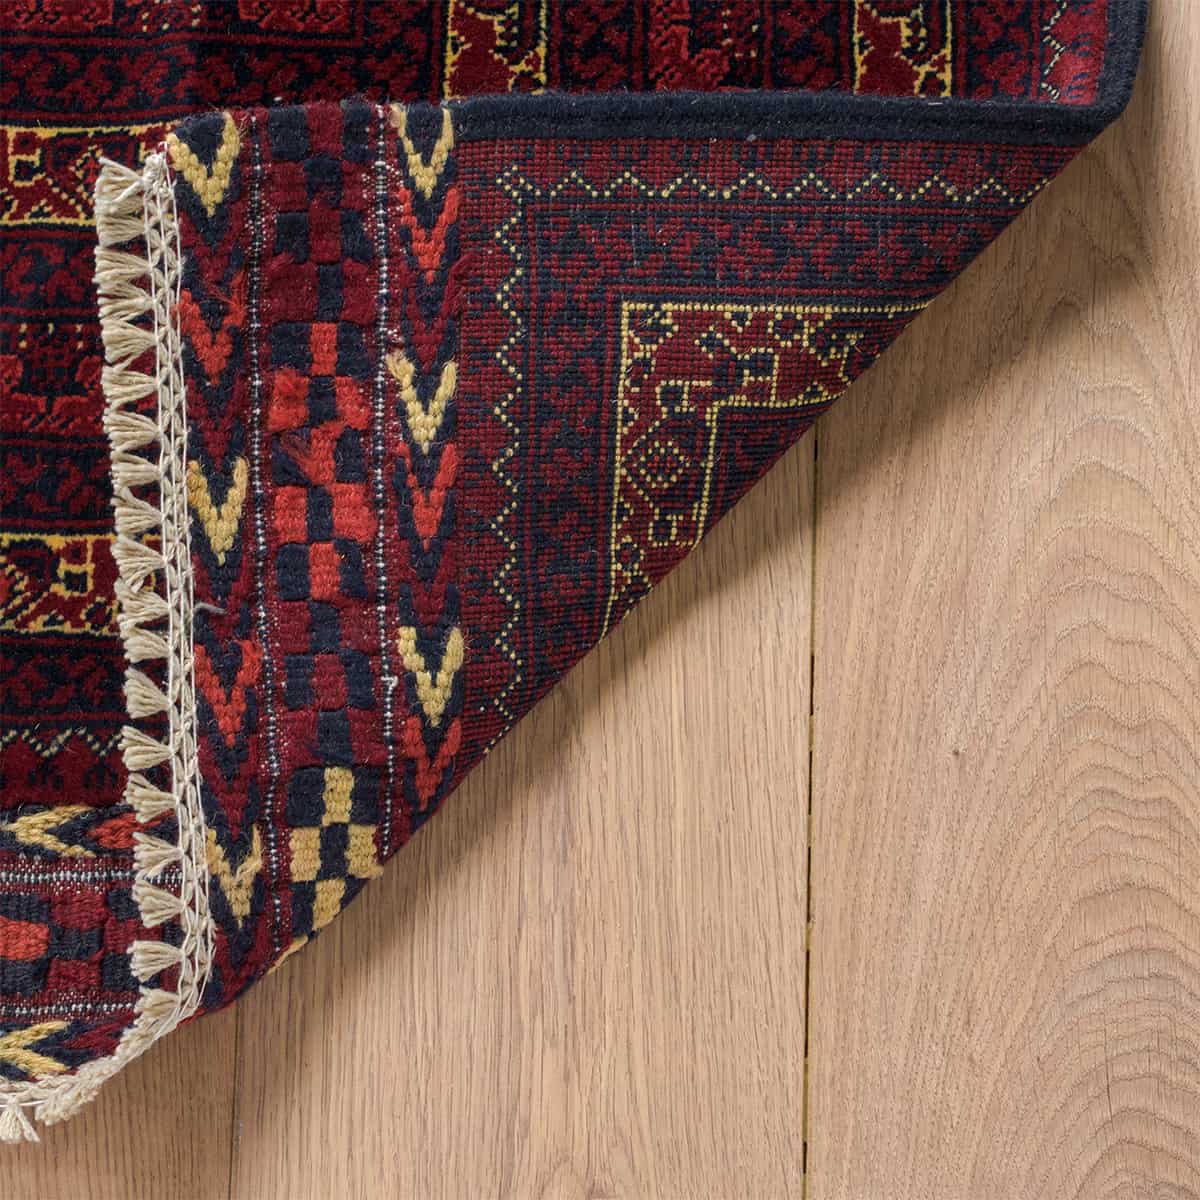  אפגני באשיר 00 אדום 194x300 | השטיח האדום 